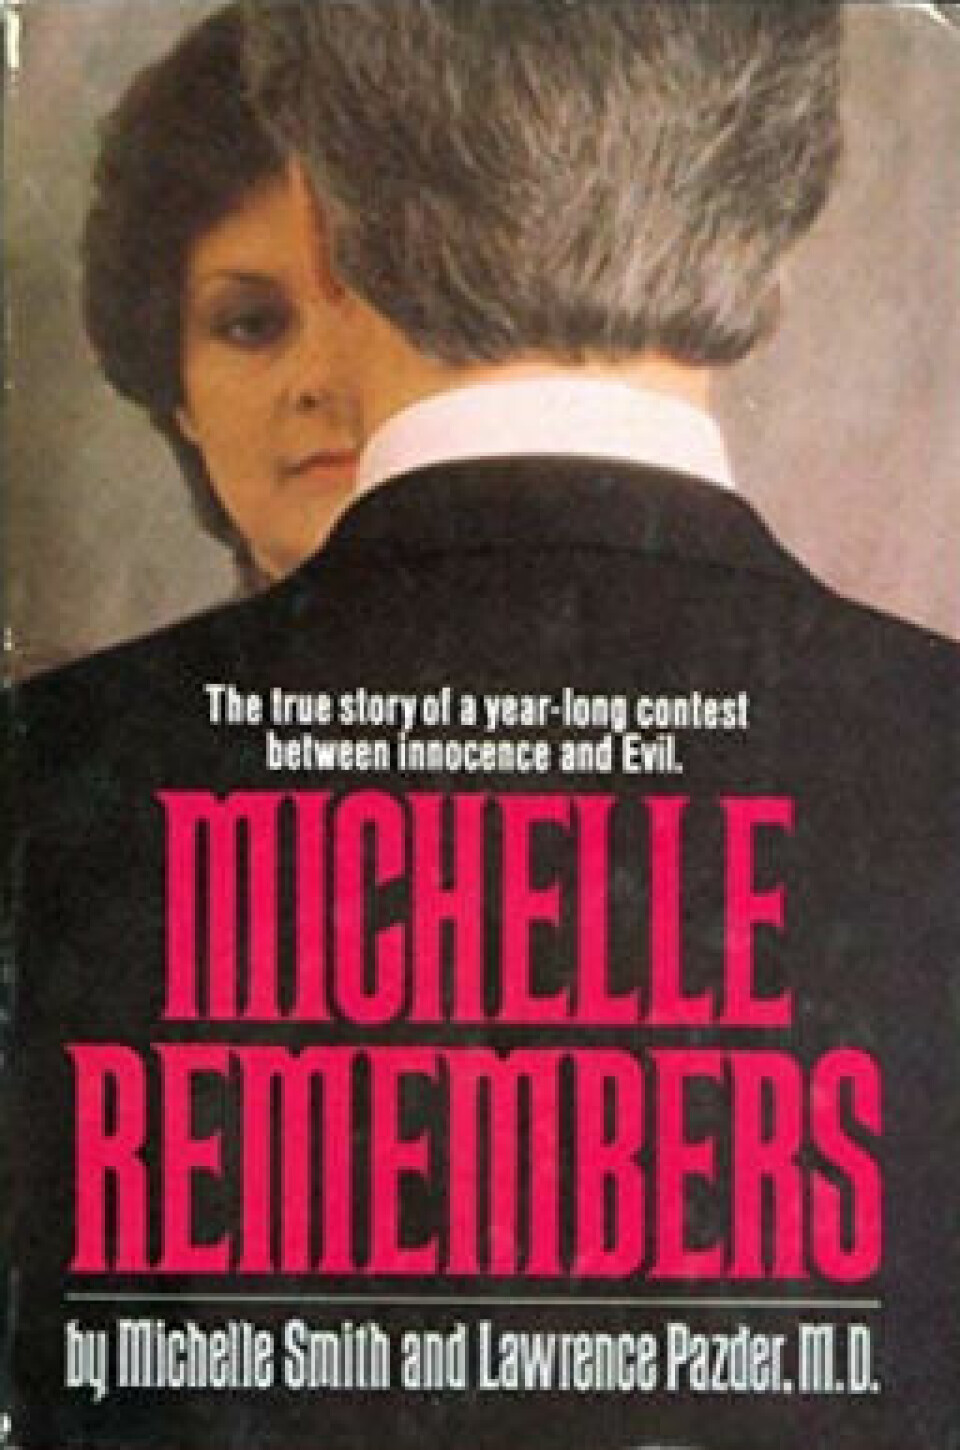 Det ble gitt ut flere bøker med historier om pasienter som plutselig husket grusomme fortrengte minner. «Michelle remembers» var en av bøkene som fikk enorm mediedekning.